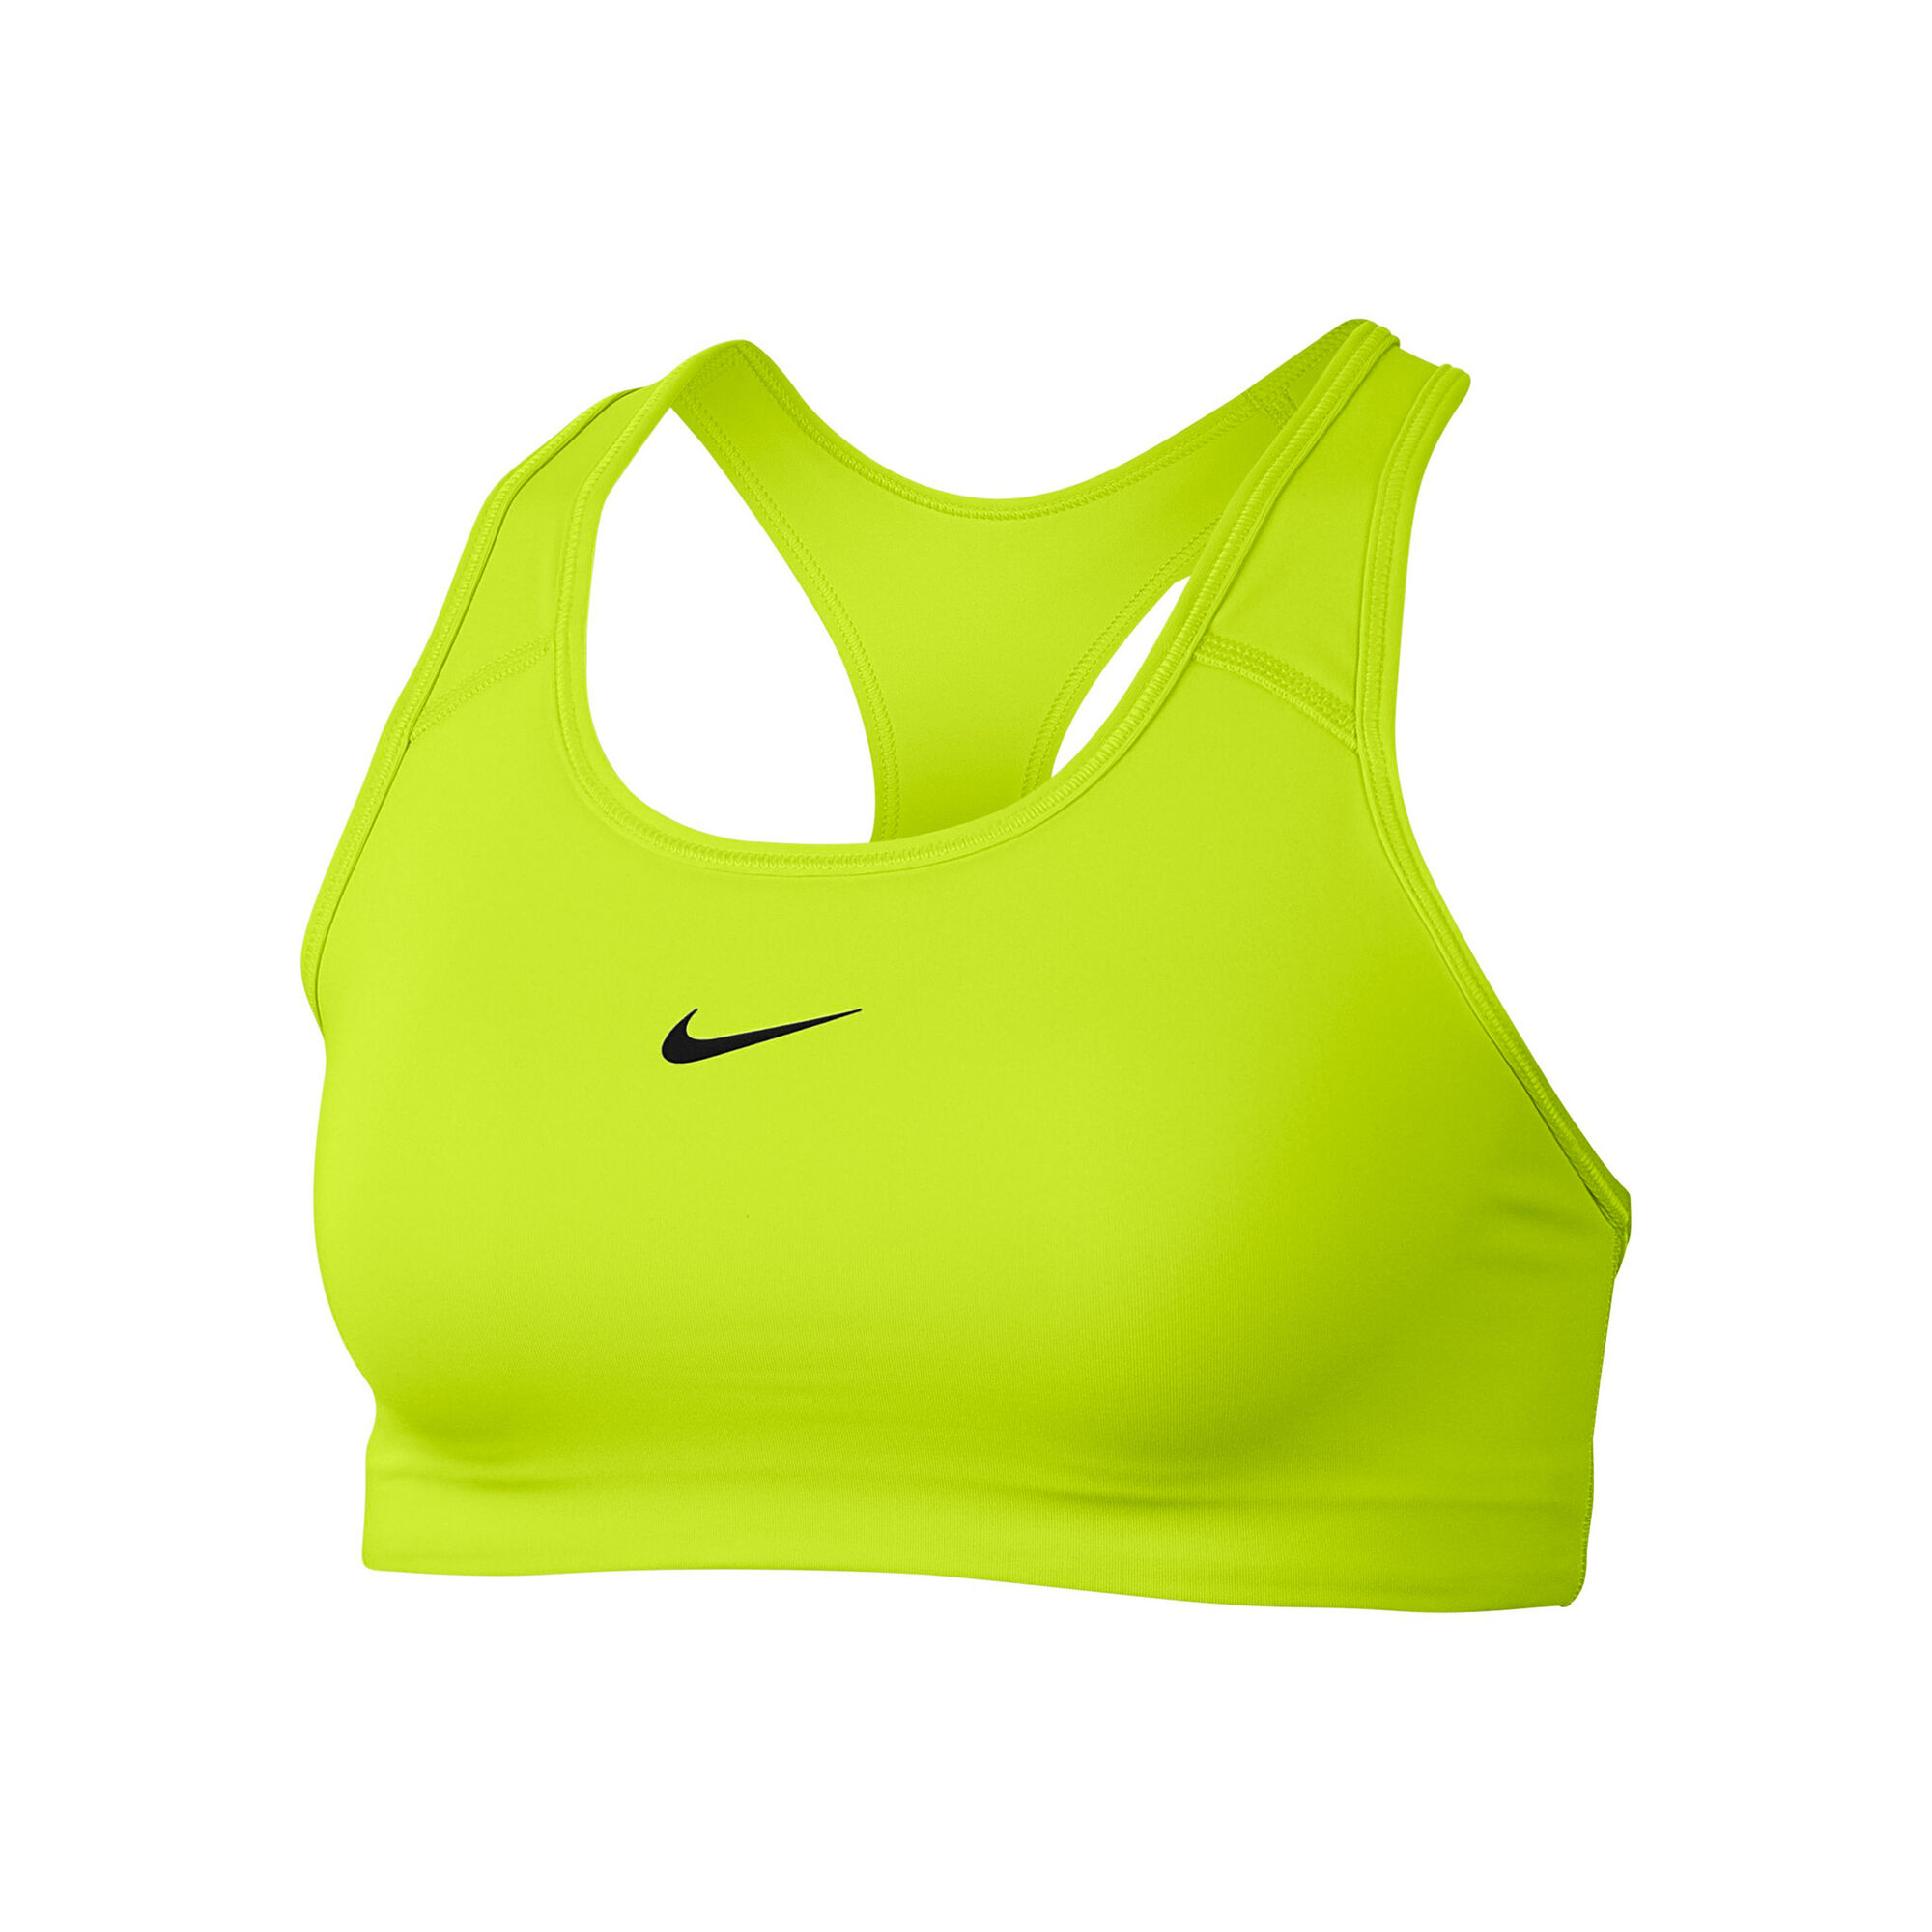 Buy Nike Sports Bras Women Neon Green, Black online